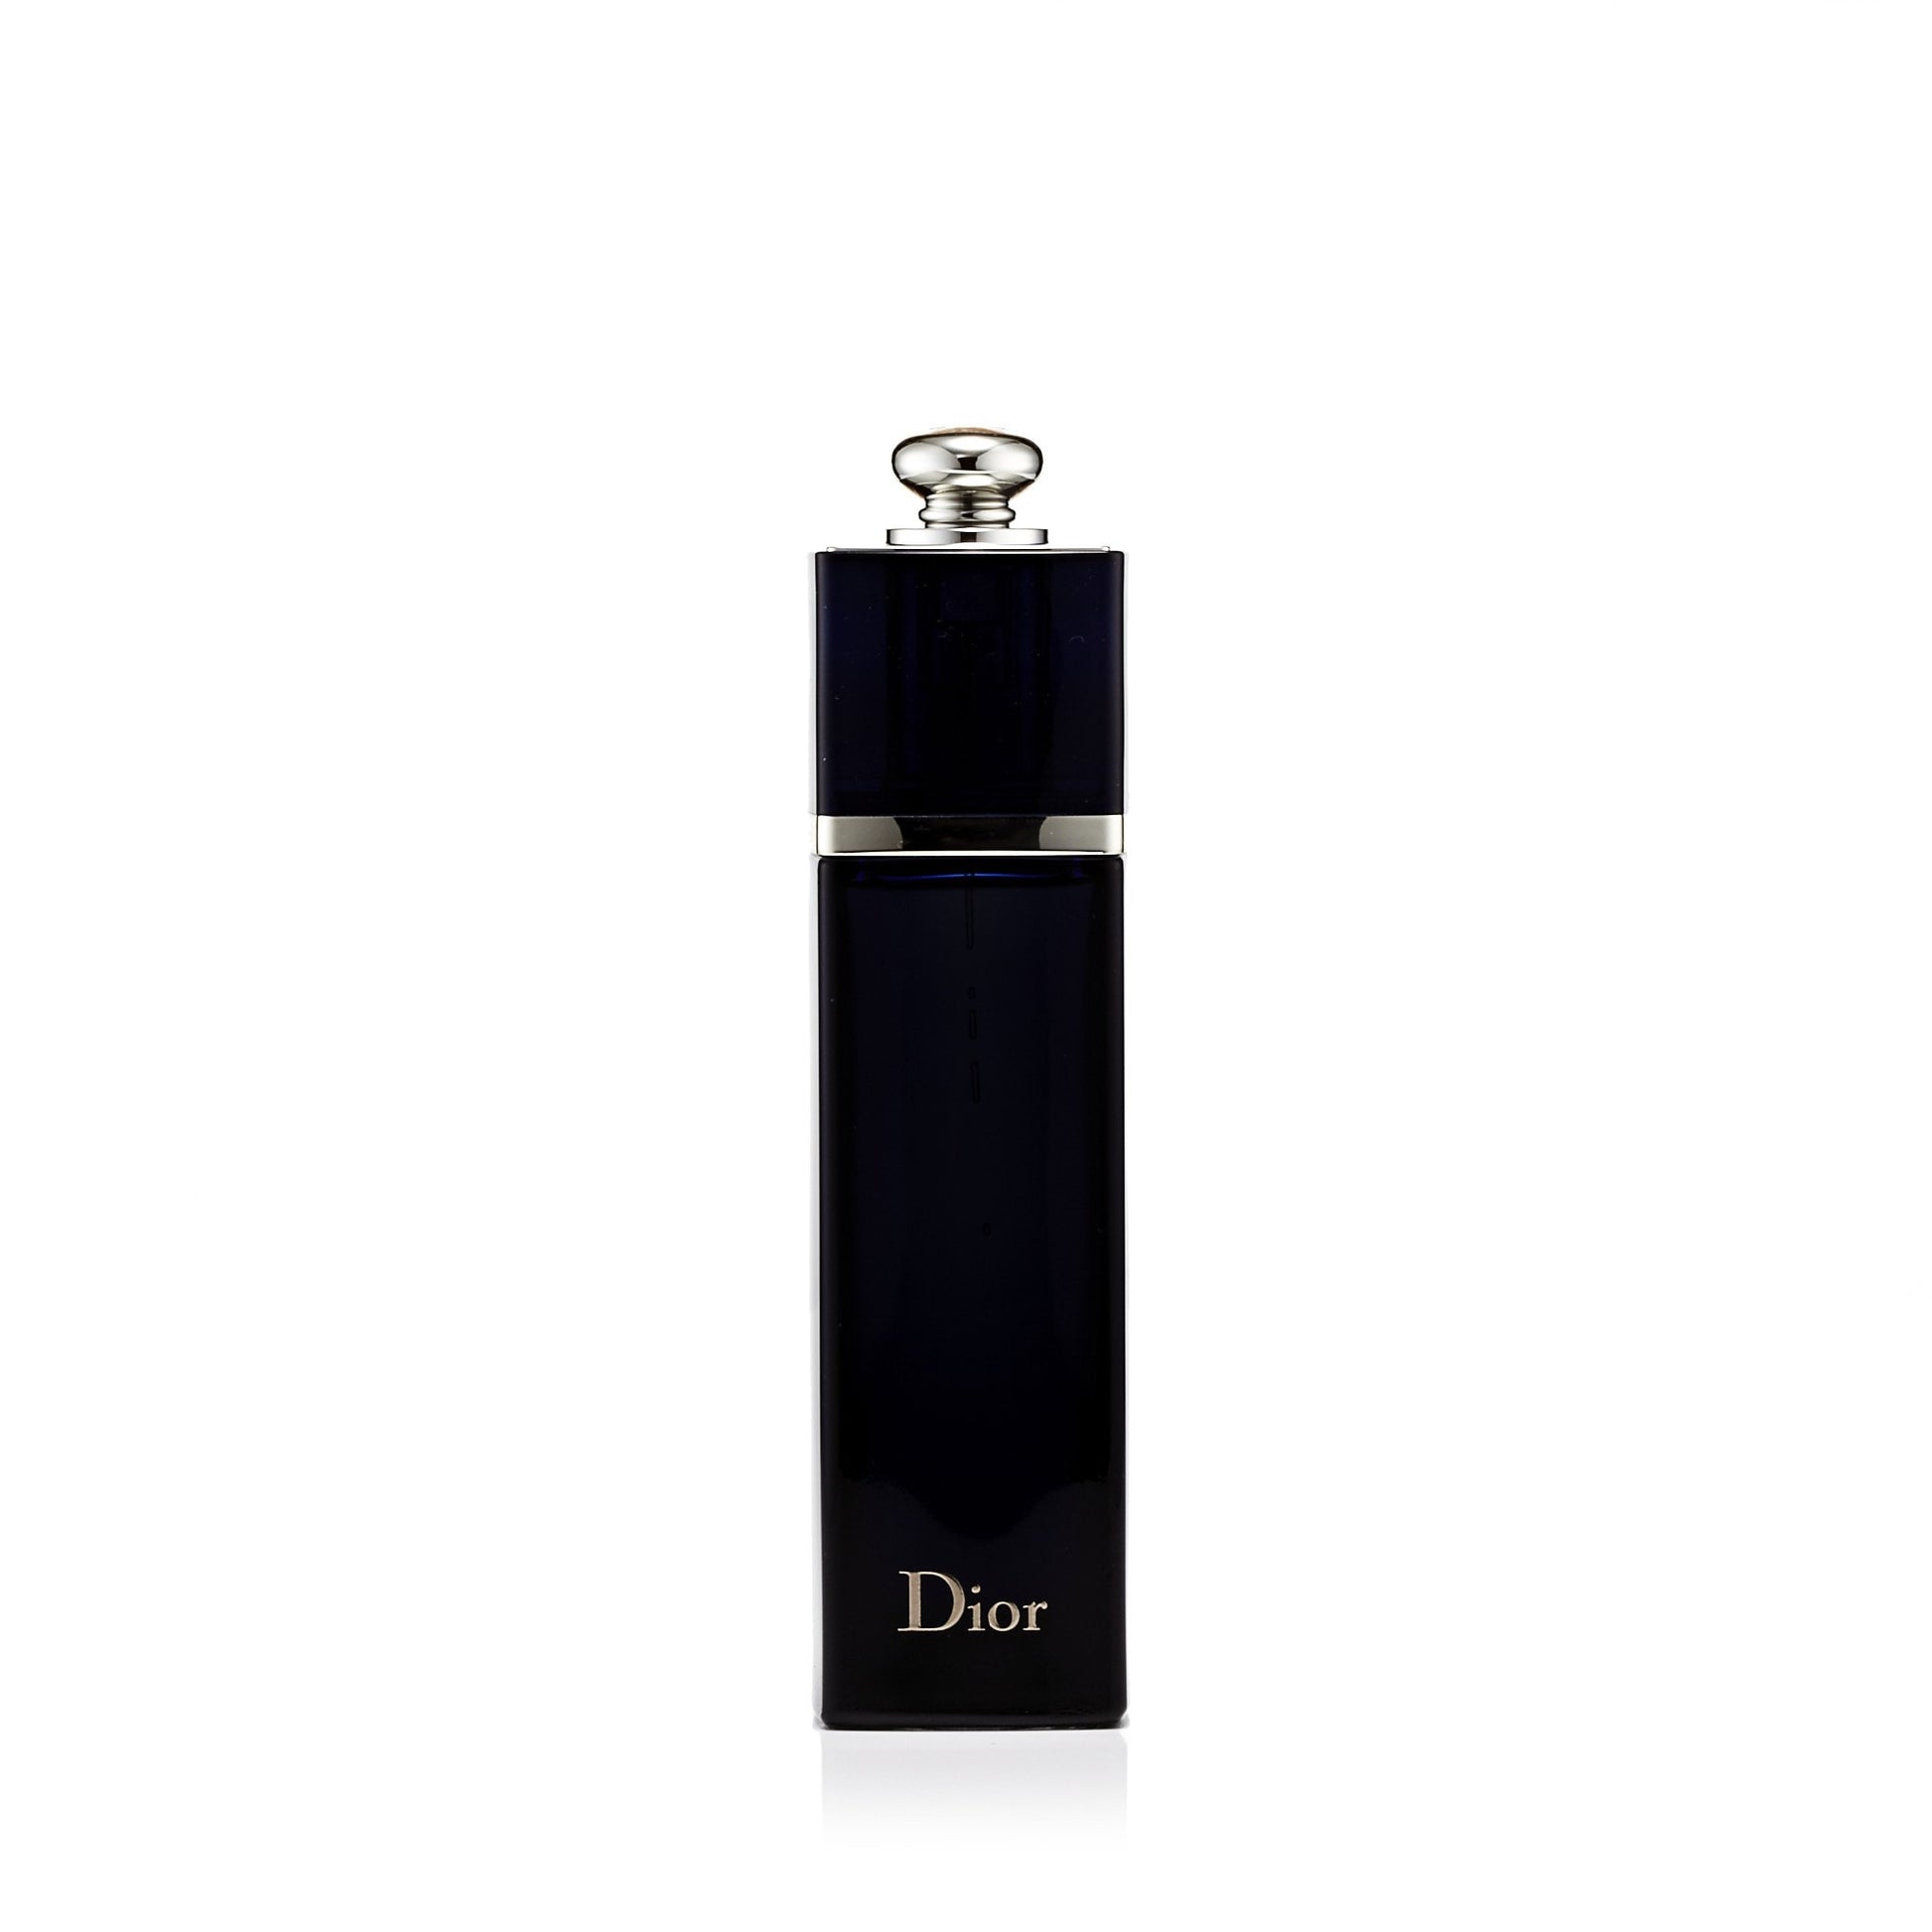 Addict Eau de Parfum Spray for Women by Dior 3.4 oz. Click to open in modal